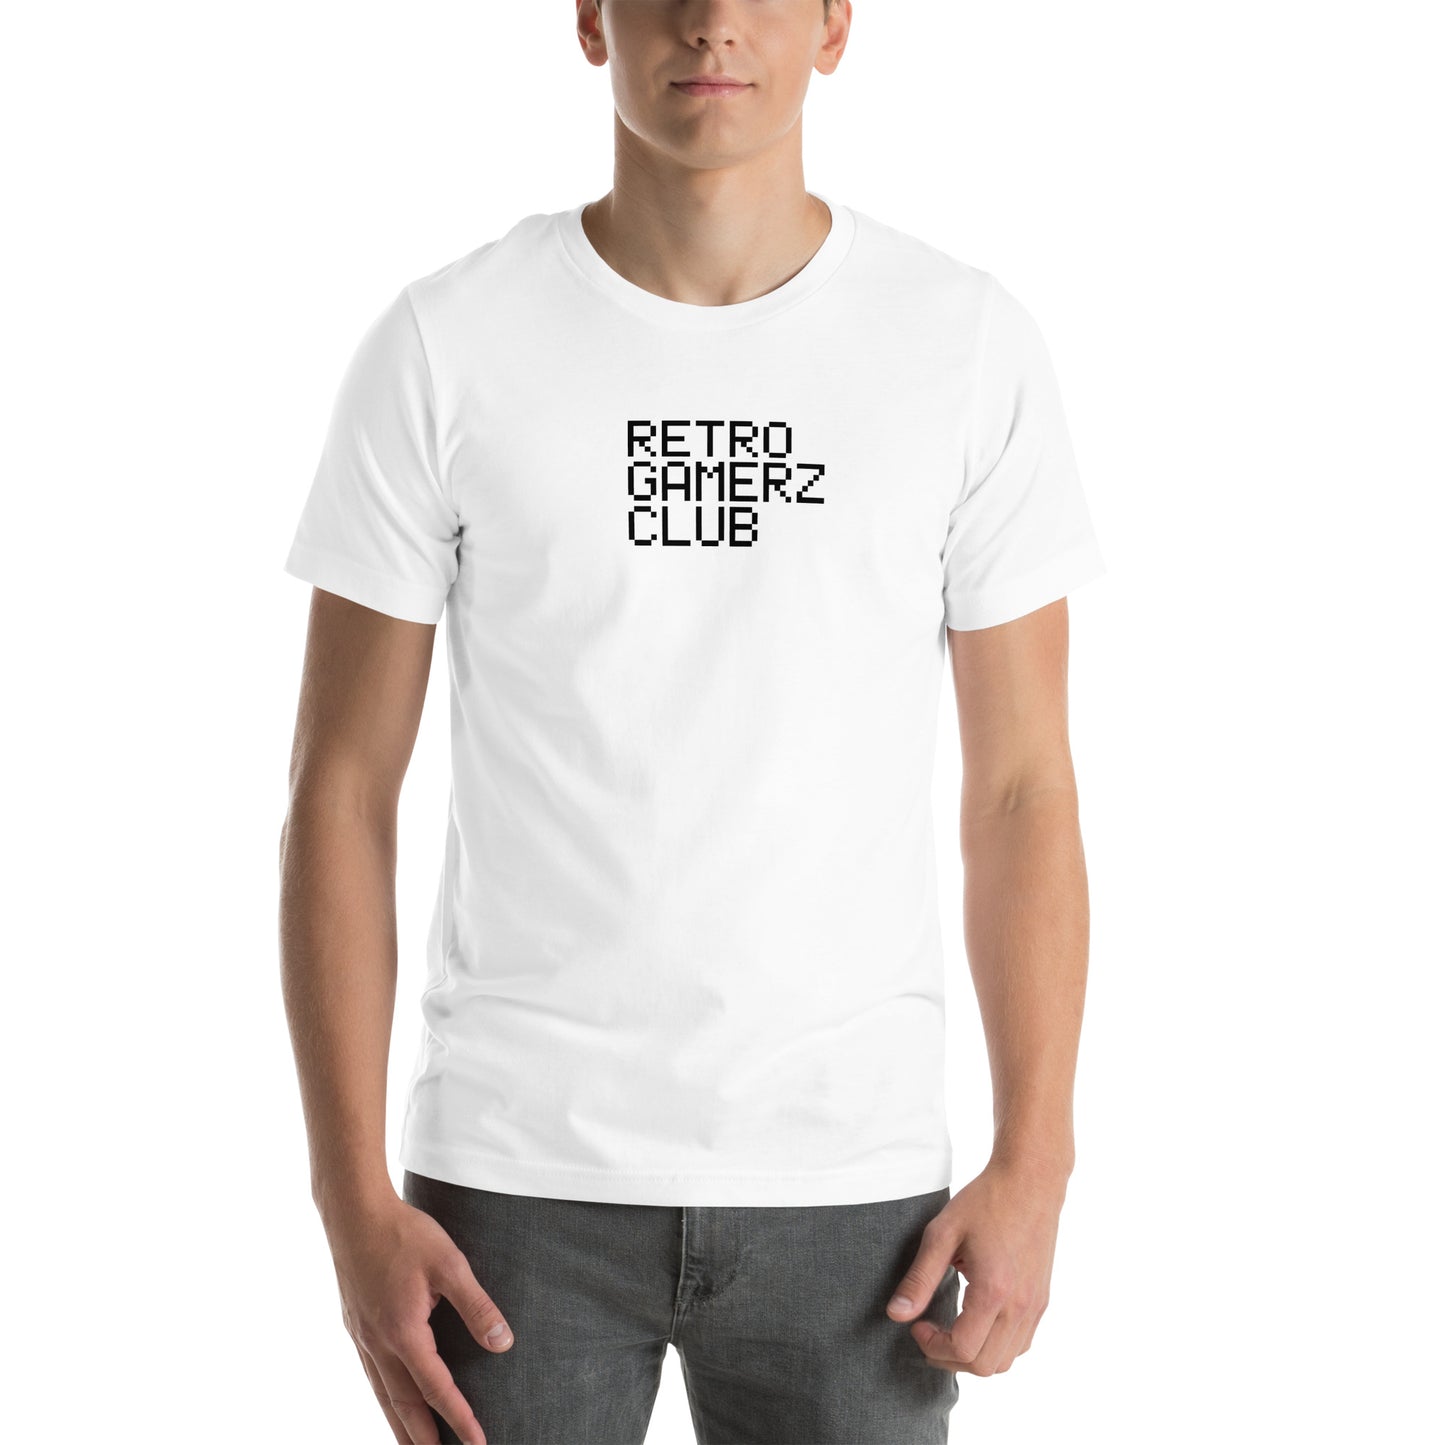 Retro Gamerz Club T-shirt